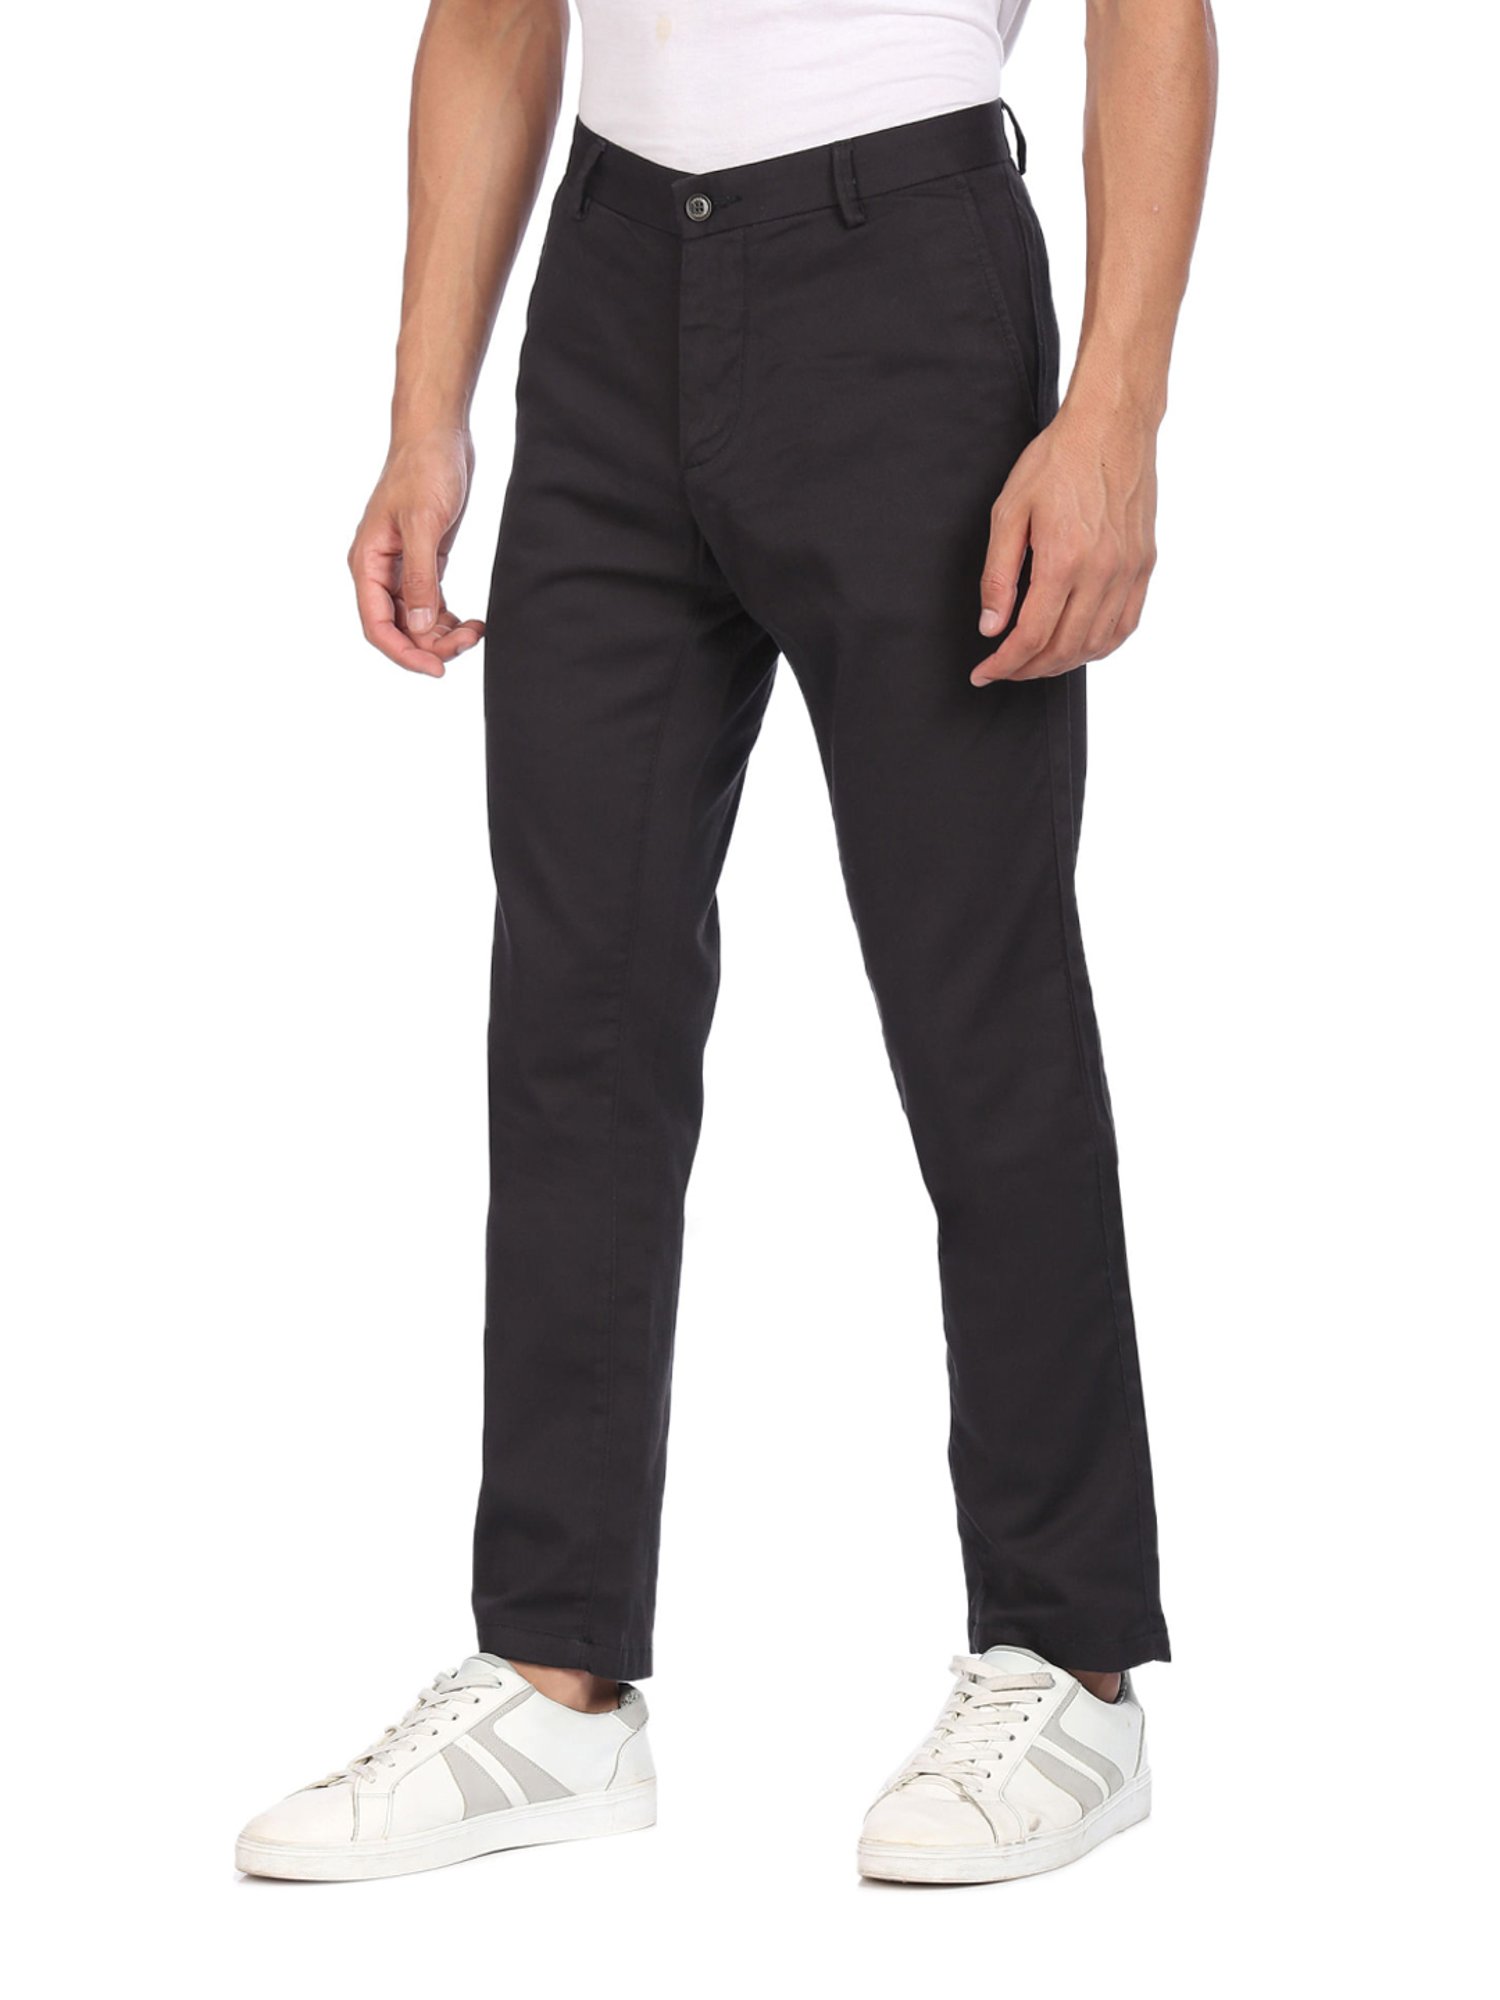 Buy Black Trousers  Pants for Men by Arrow Sports Online  Ajiocom